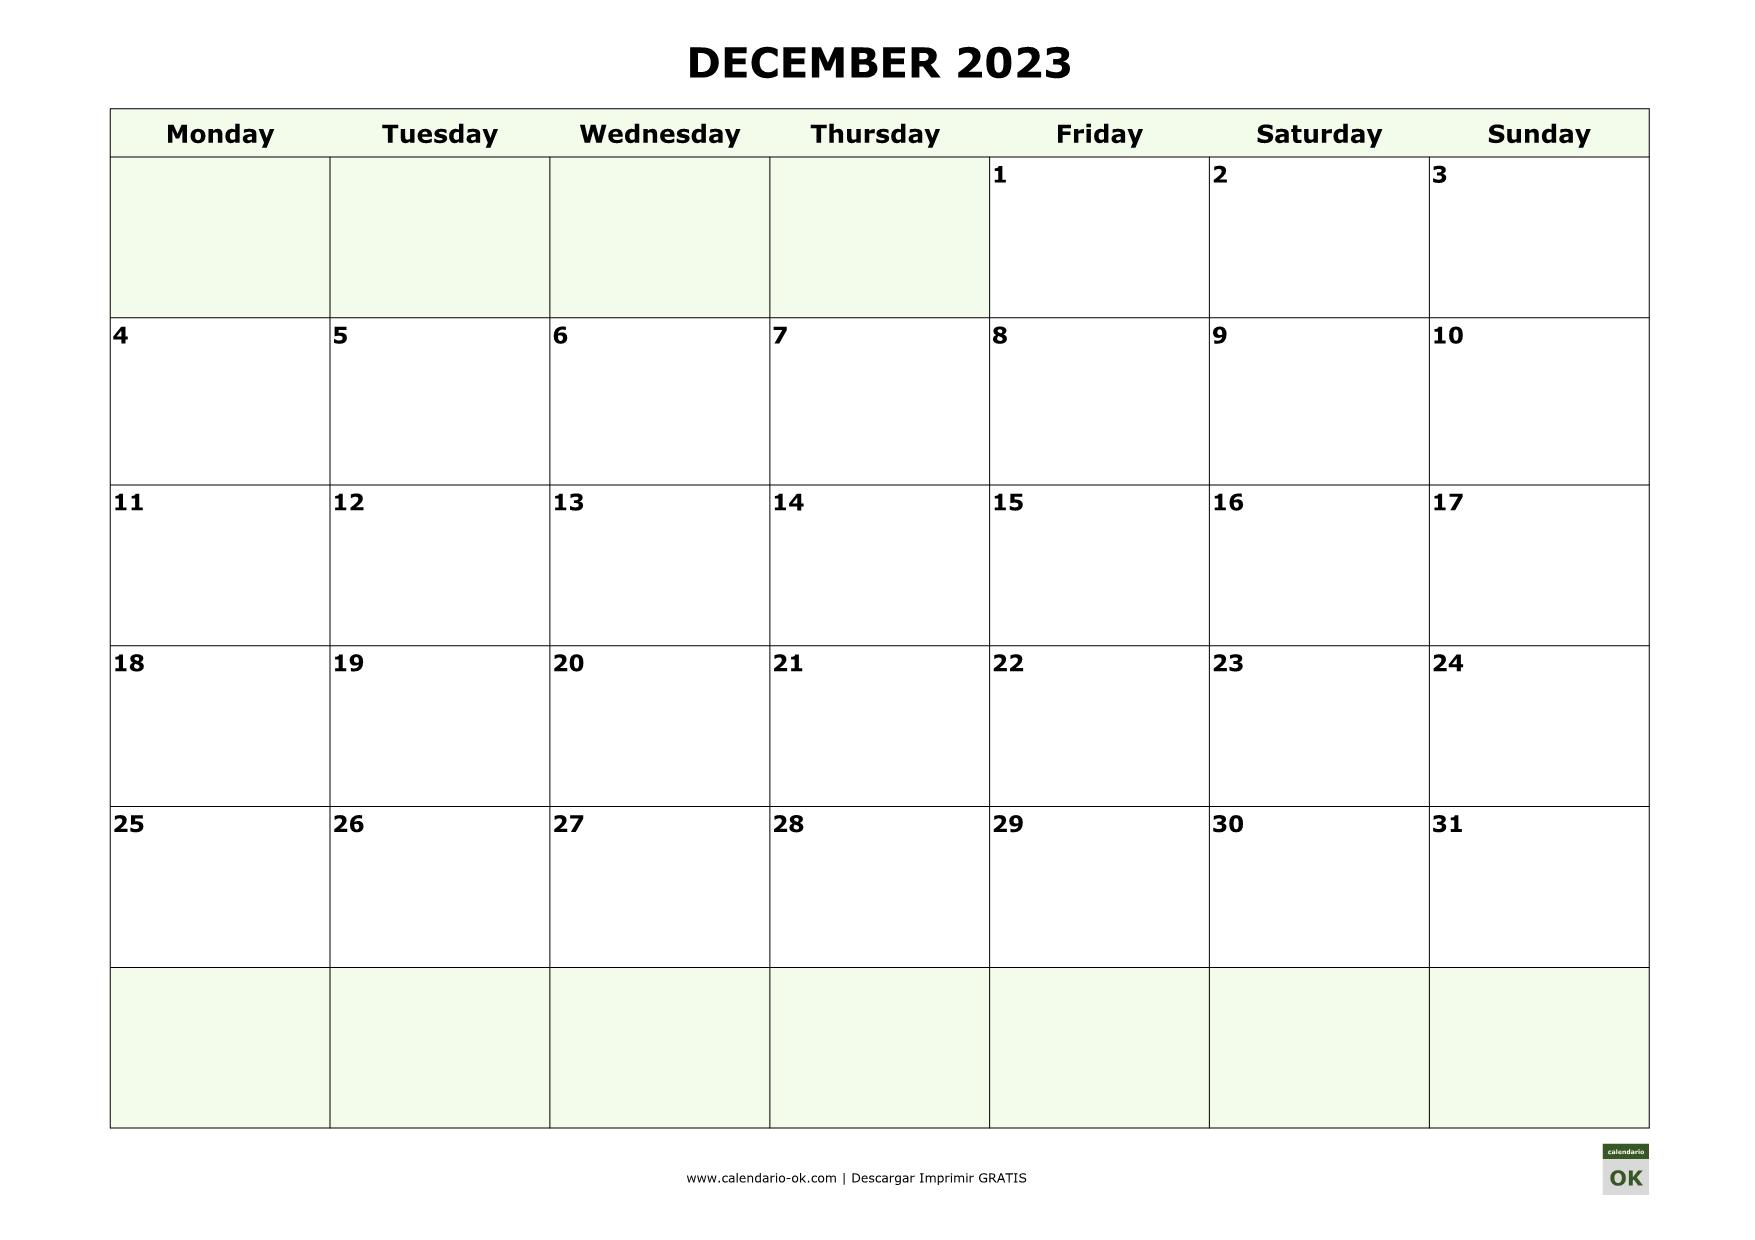 DICIEMBRE 2023 calendario en INGLES